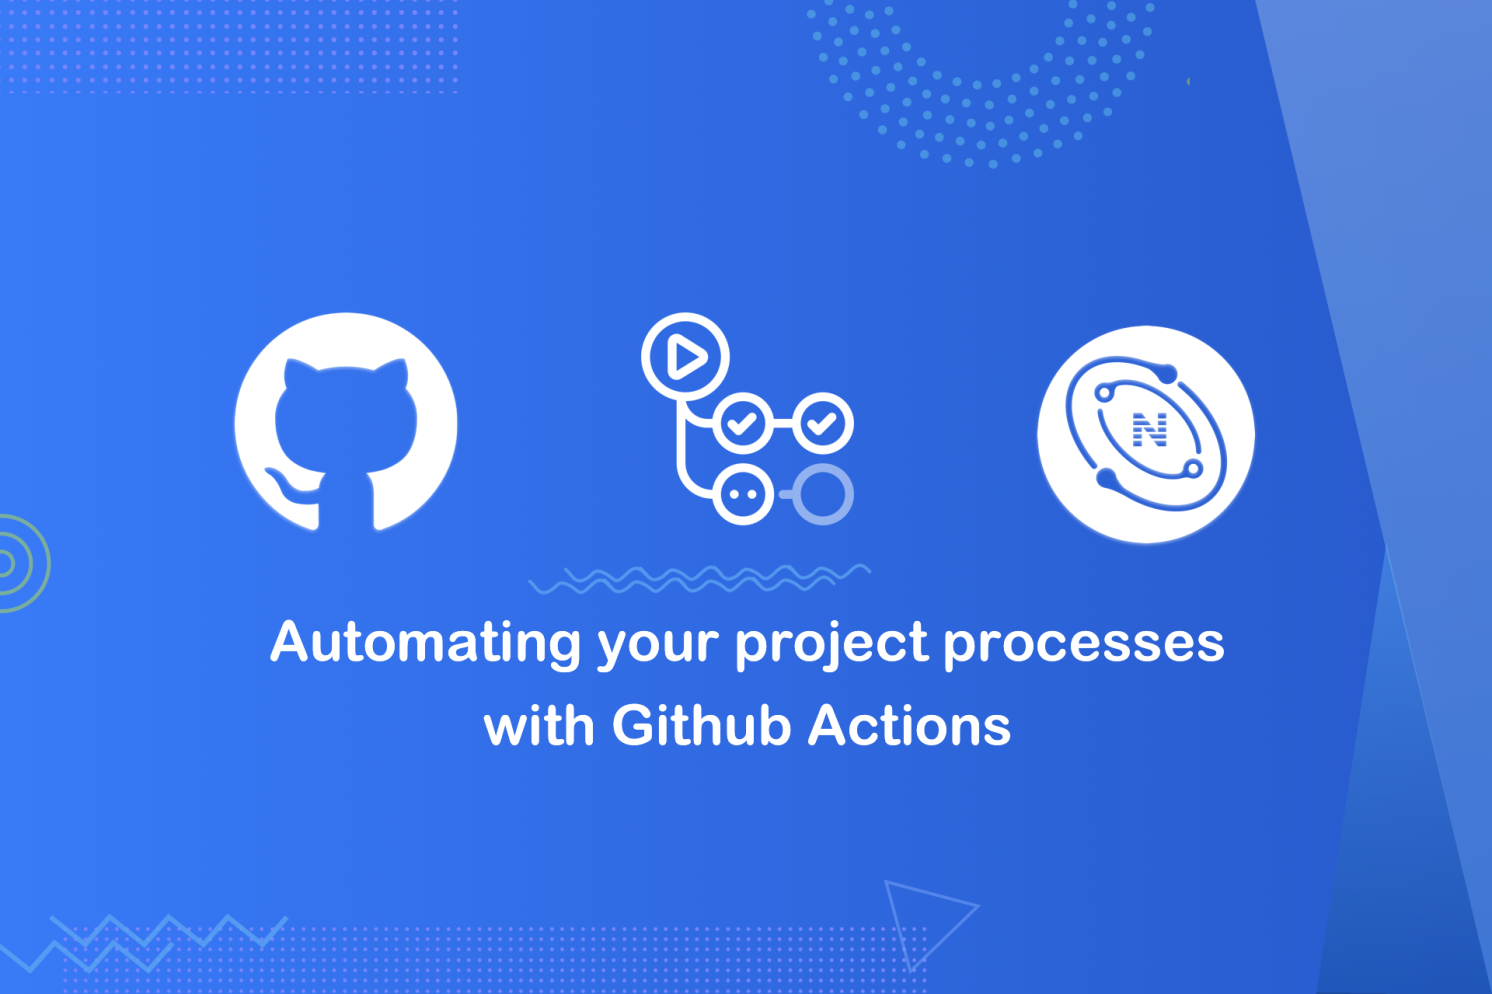 使用 Github Action 进行前端自动化发布